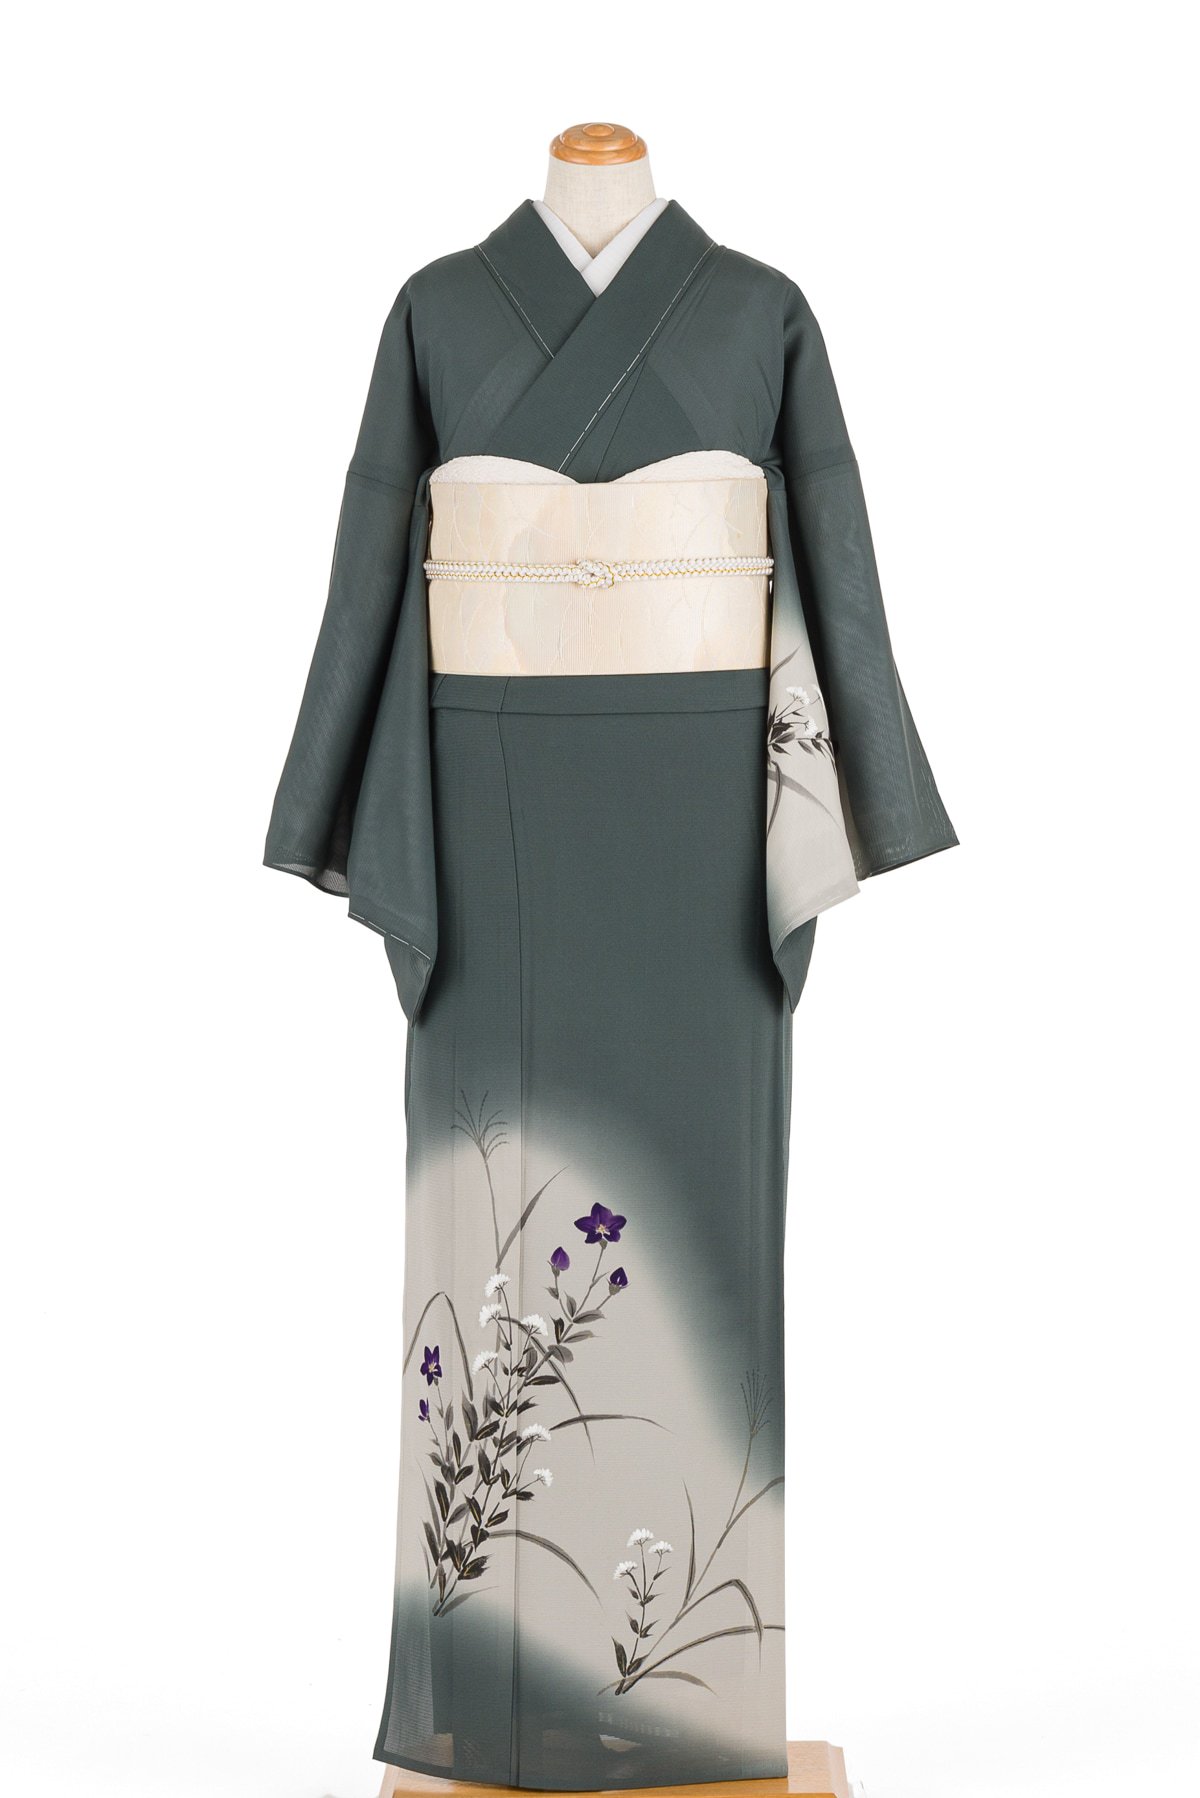 4k166 袋帯 絹 祇園祭礼 引箔袋 金色 ベージュ 赤 紫 白 花柄 和装-